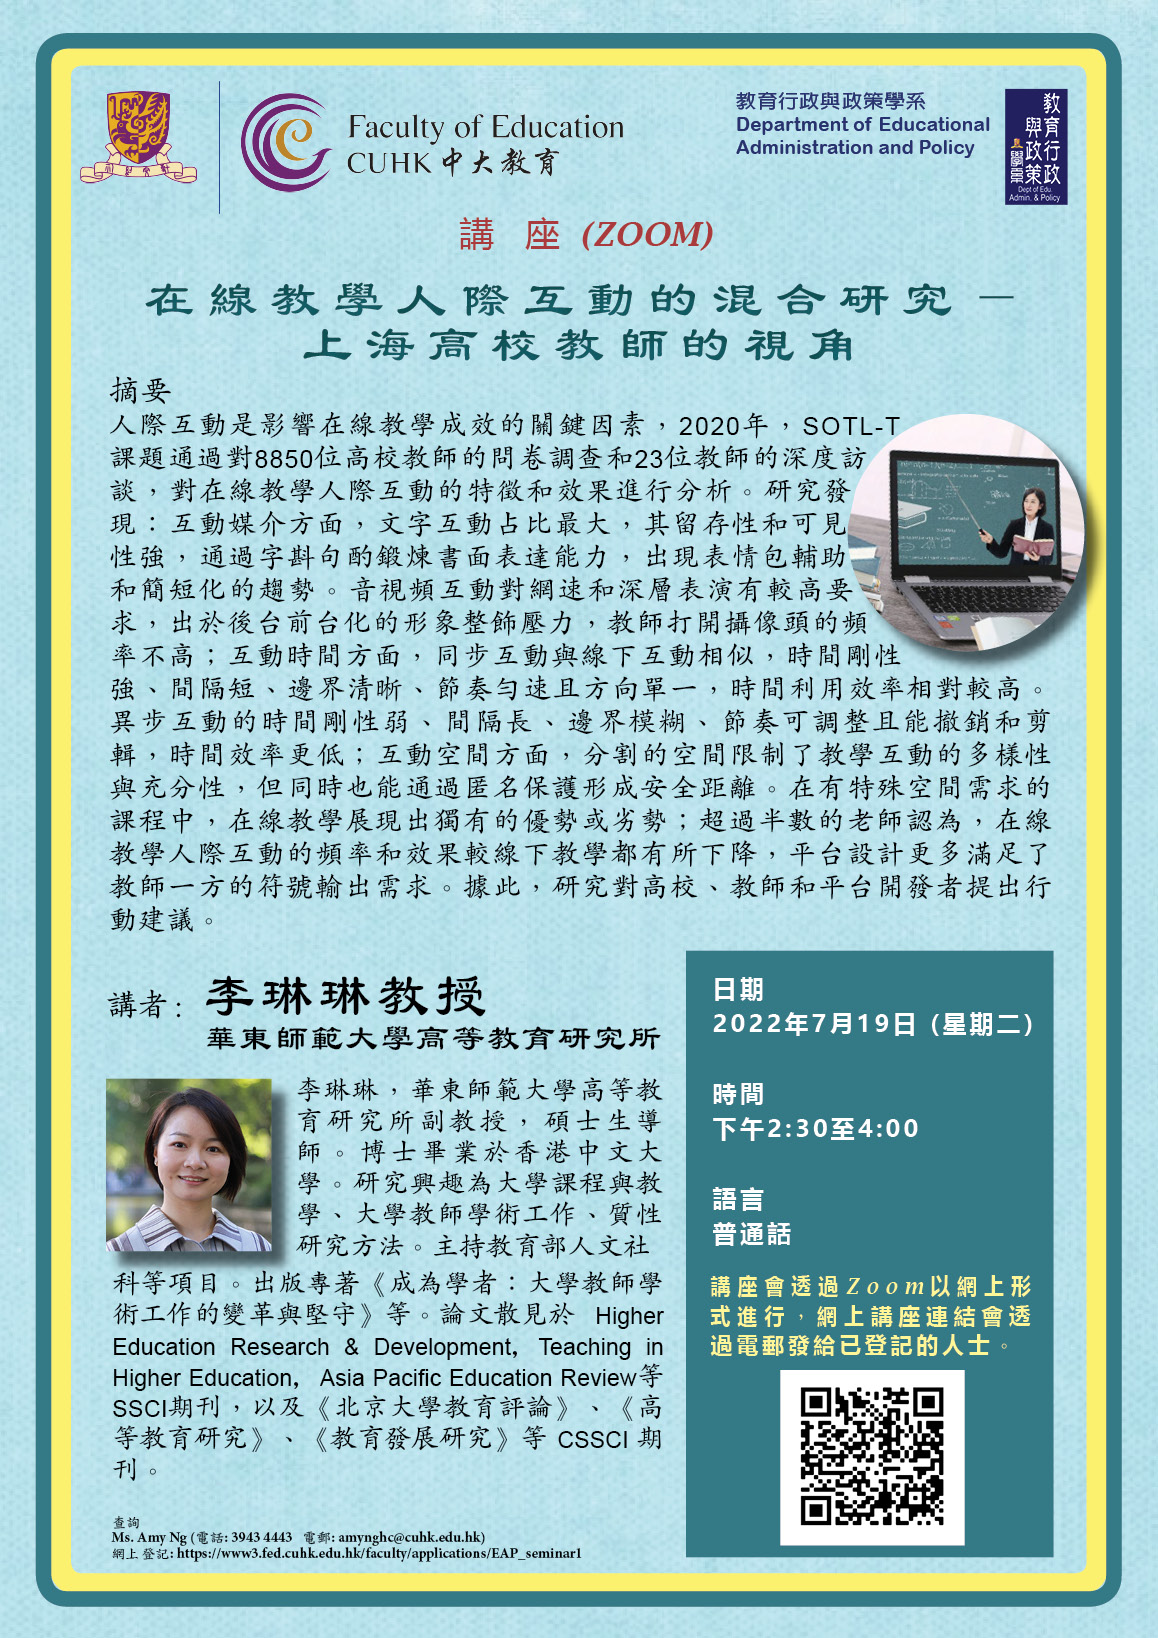 在線教學人際互動的混合研究 — 上海高校教師的視角